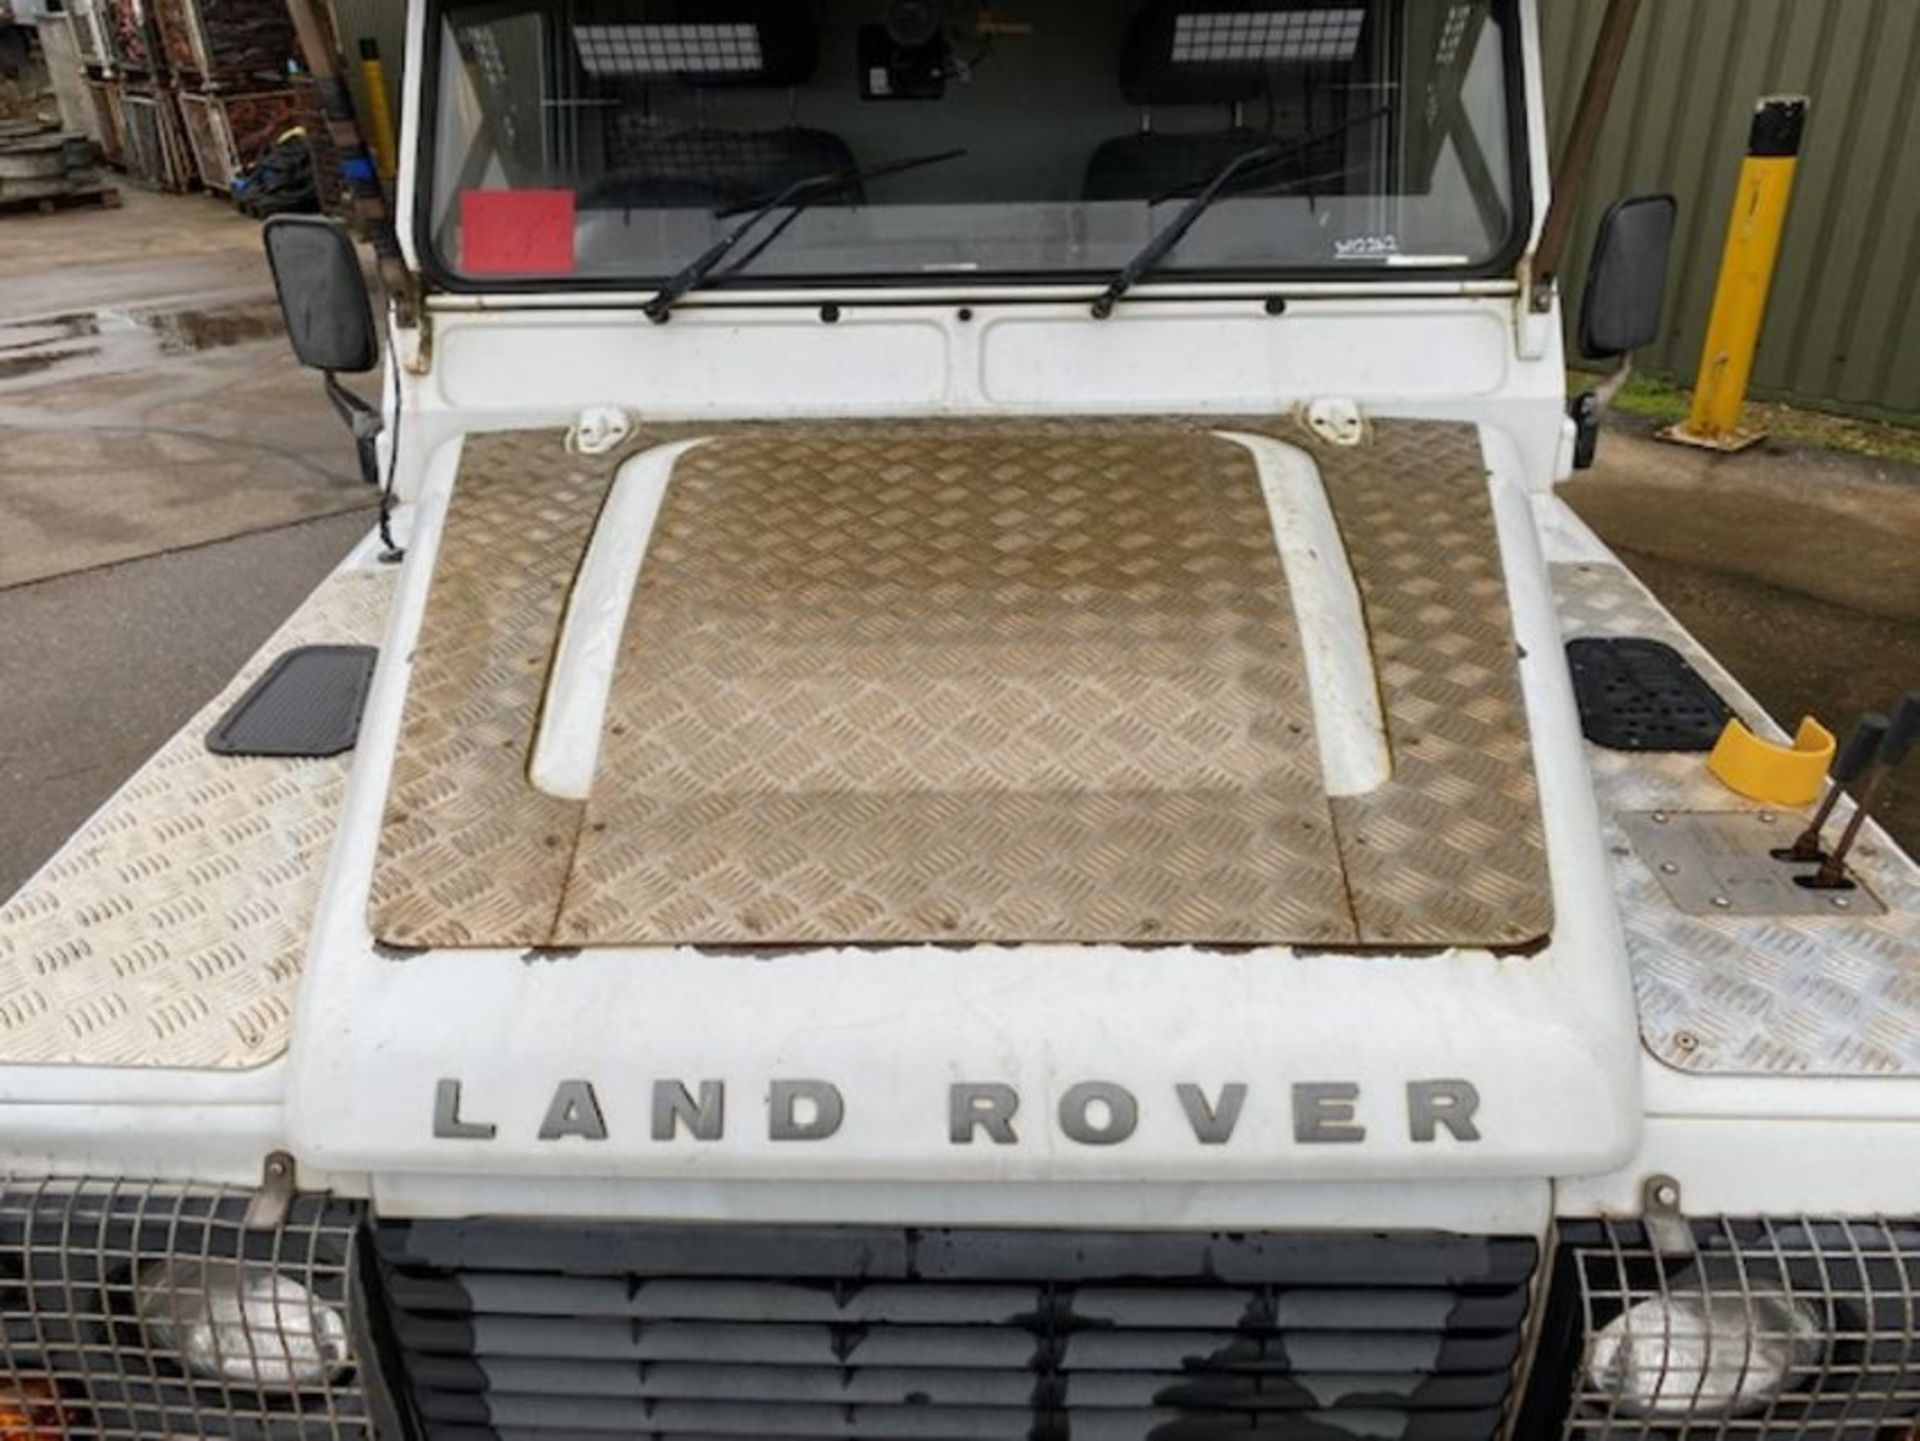 1 Owner 2011 Land Rover Defender 110 Puma hardtop 4x4 Utility vehicle (mobile workshop) - Image 27 of 51